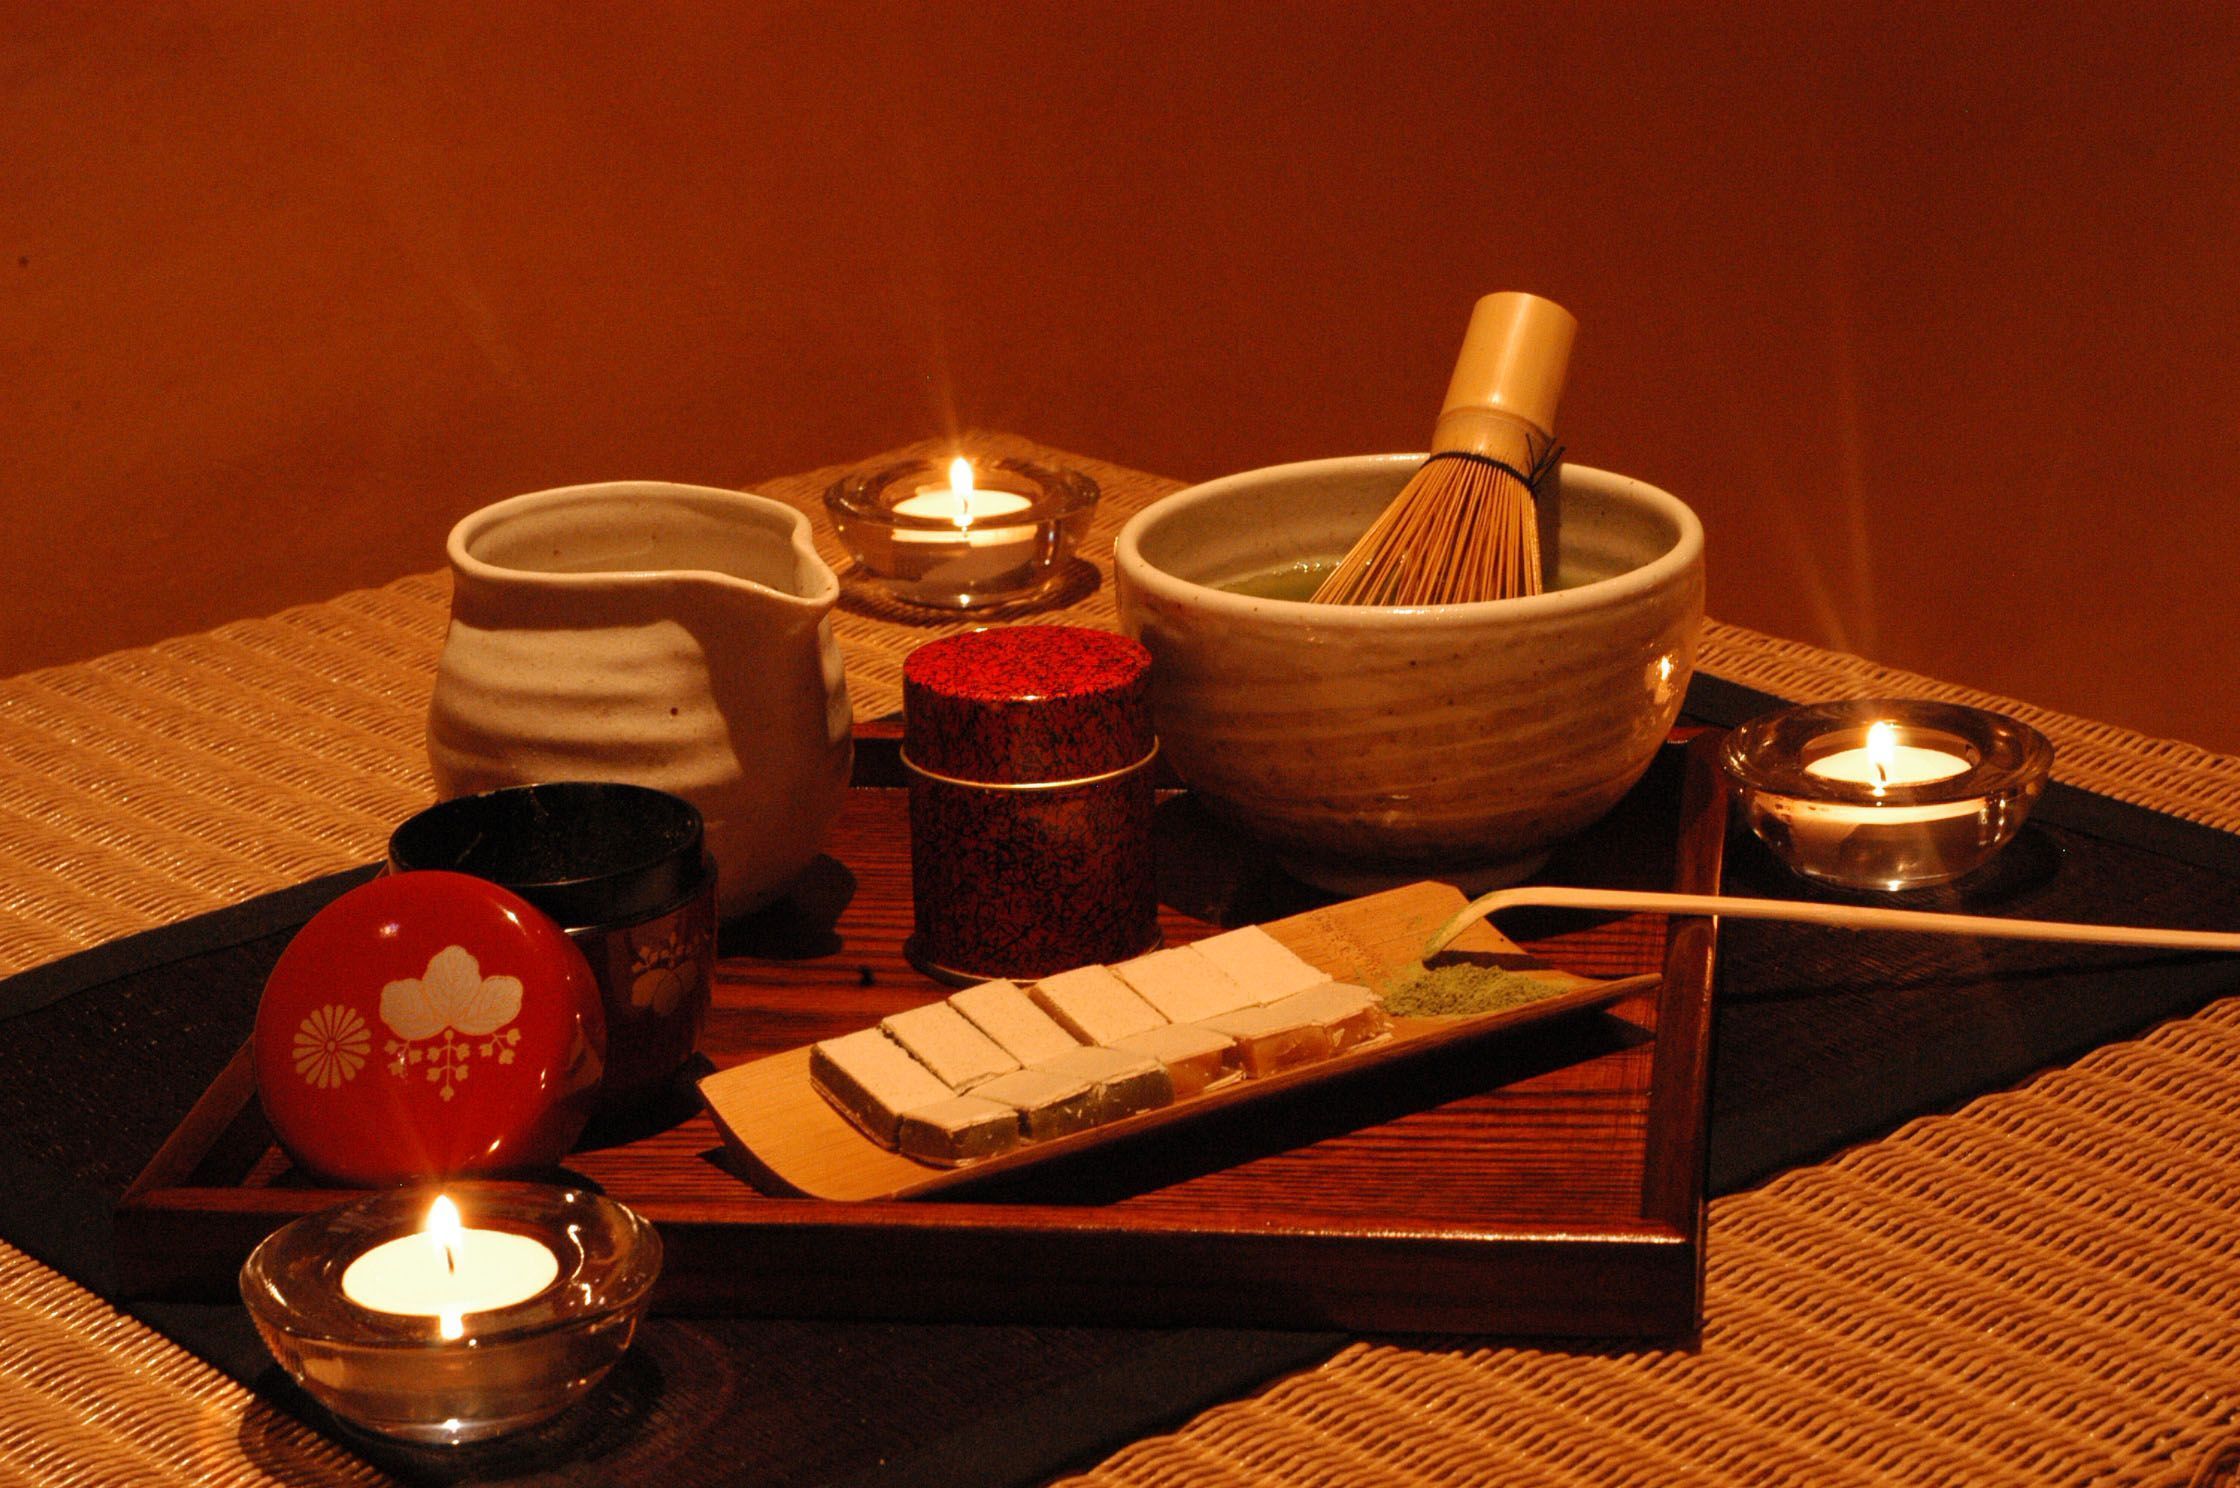 Le matcha, un élément central d'une cérémonie de thé japonaise.